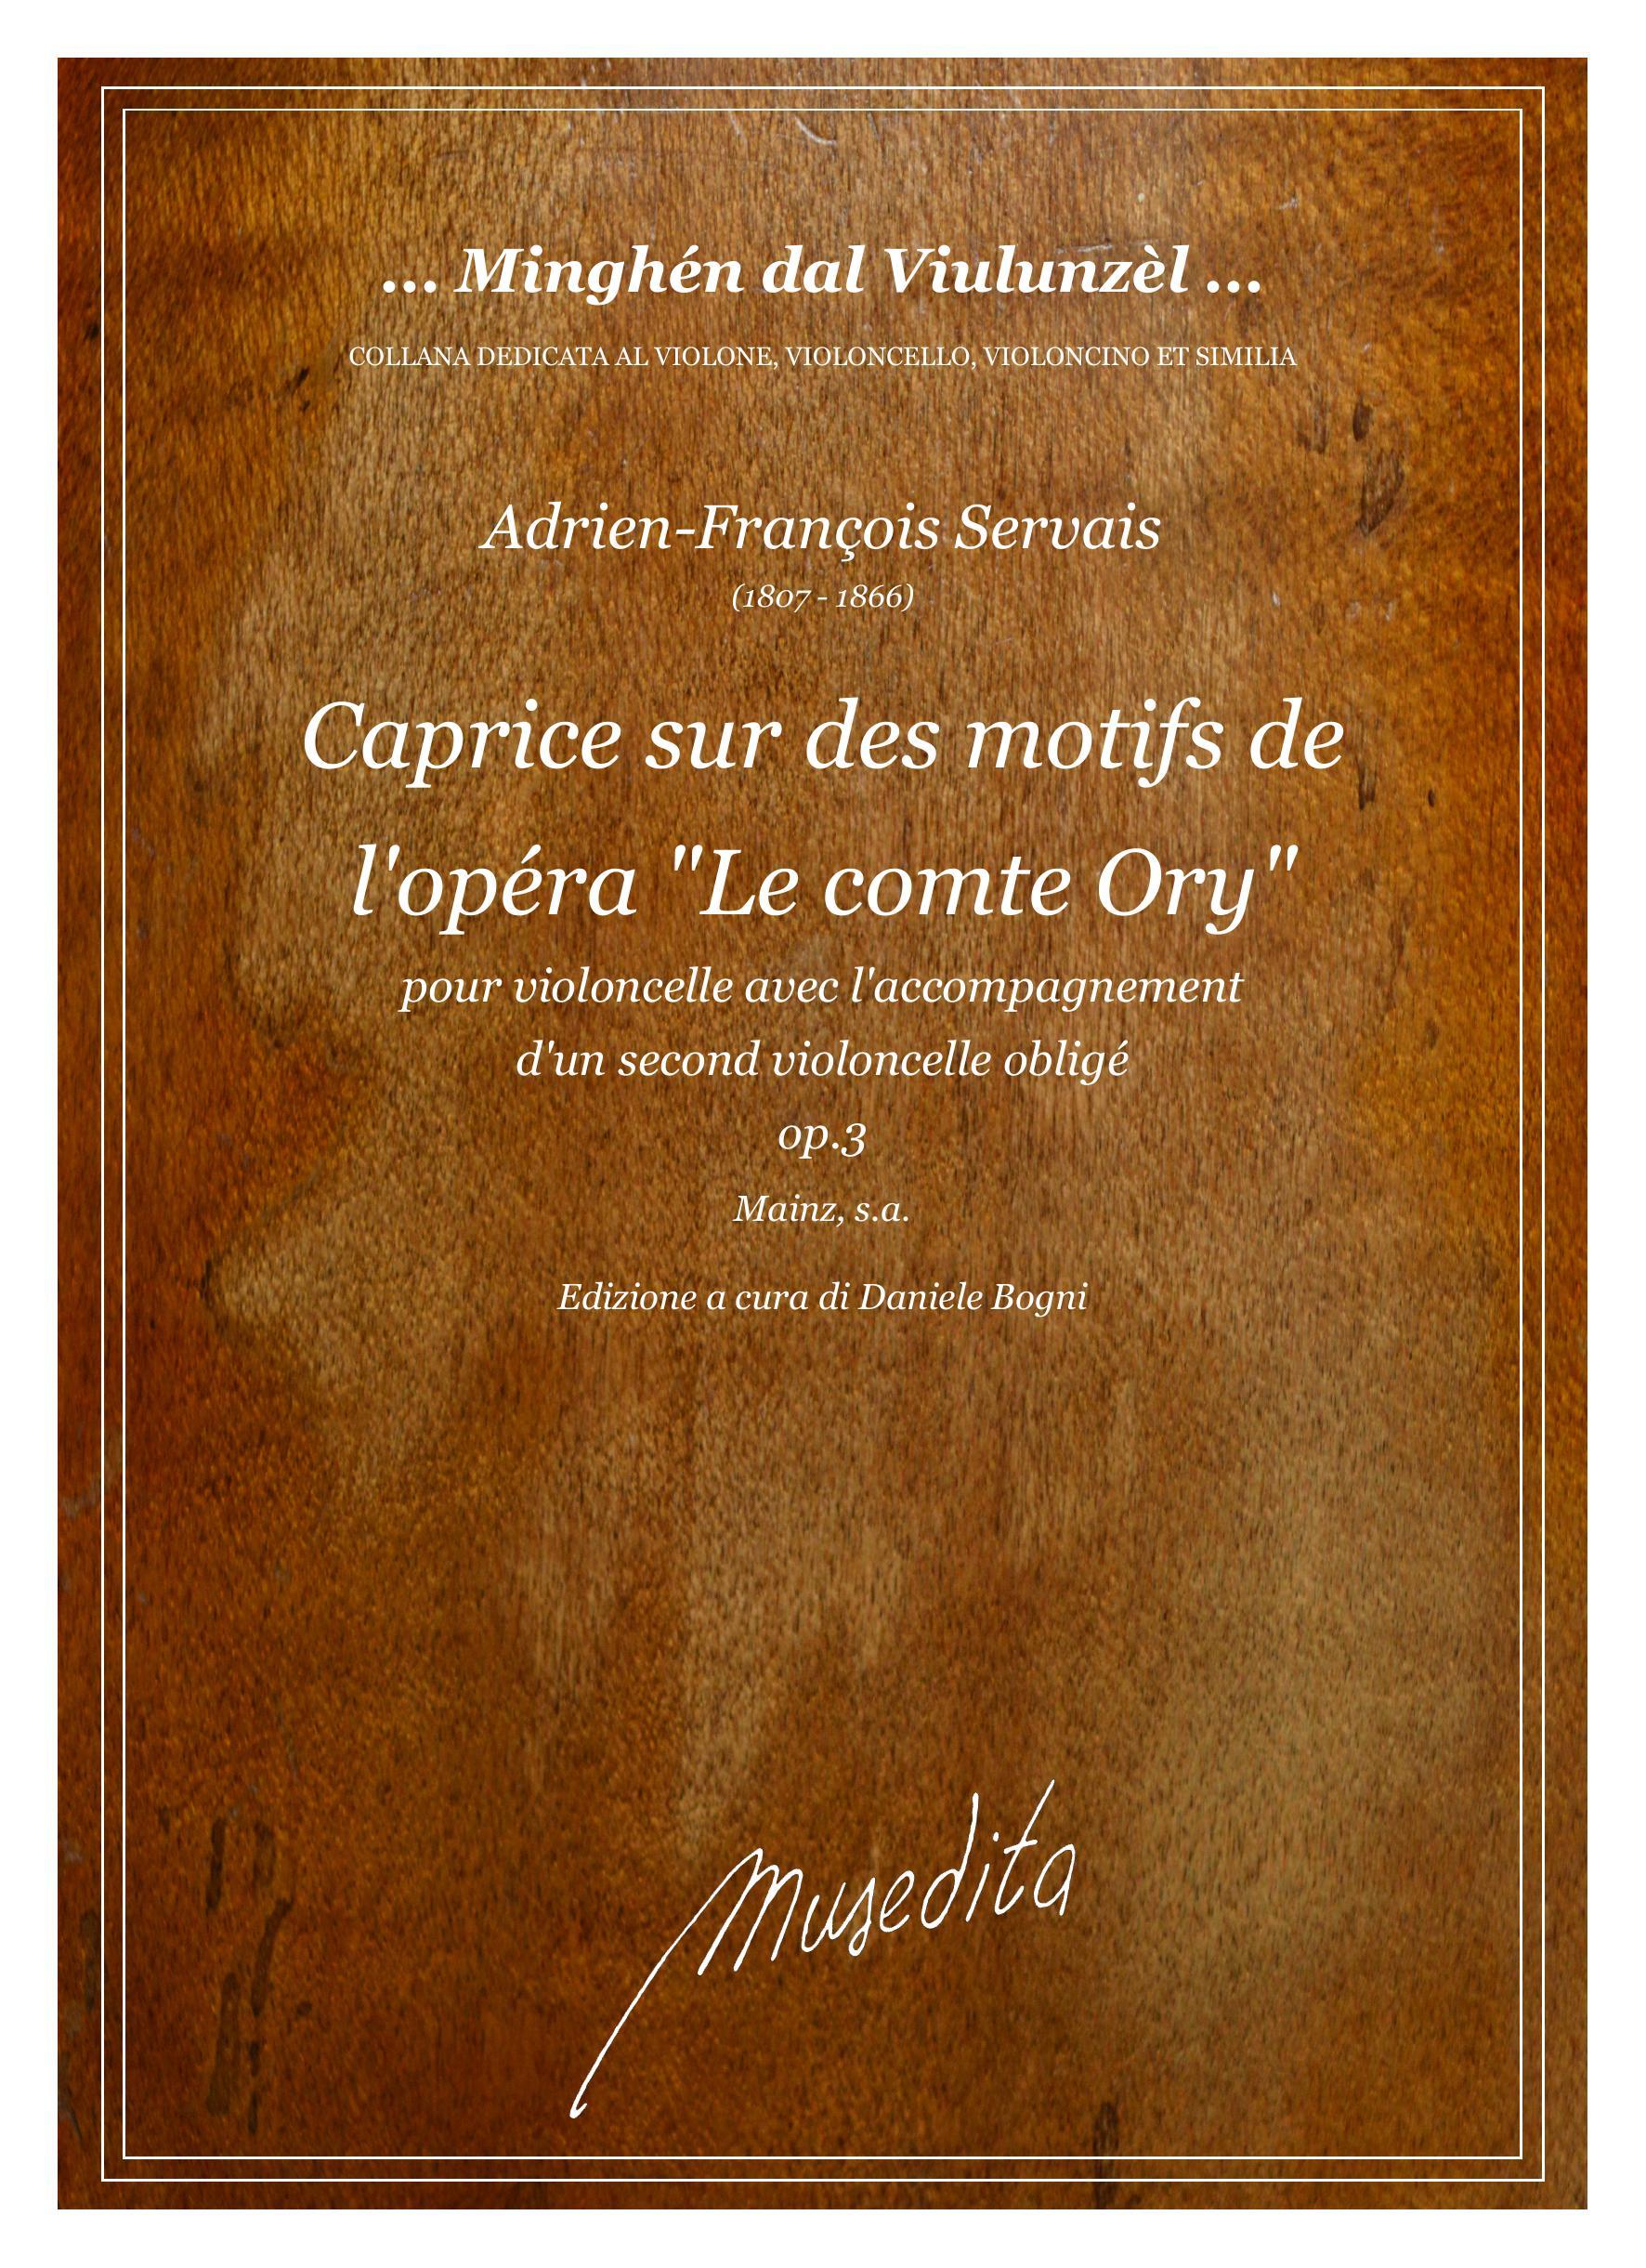 A.F.Servais: Caprice sur des motifs de l'opéra  "Le comte Ory" op.3 (Mains, s.a.)